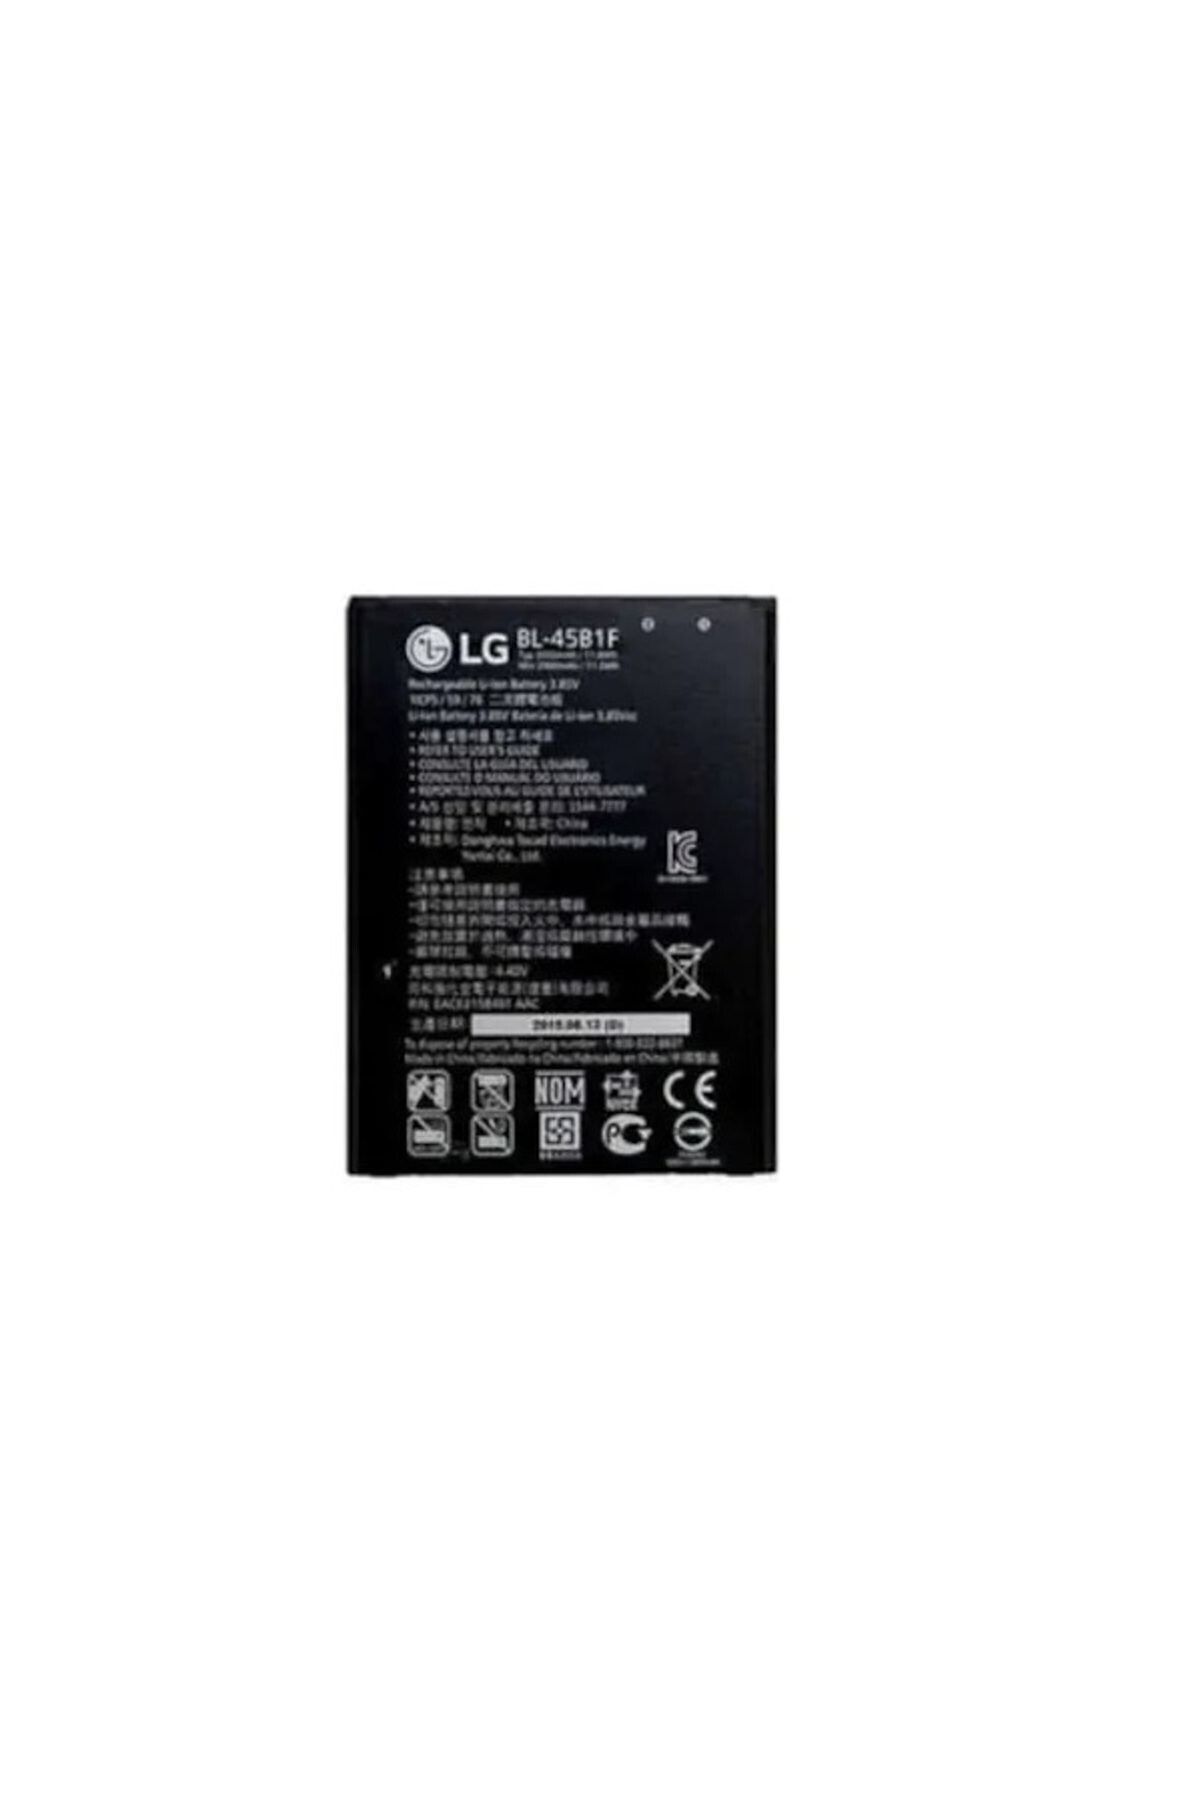 LG V10 Batarya Bl-45b1f 3000 Mah